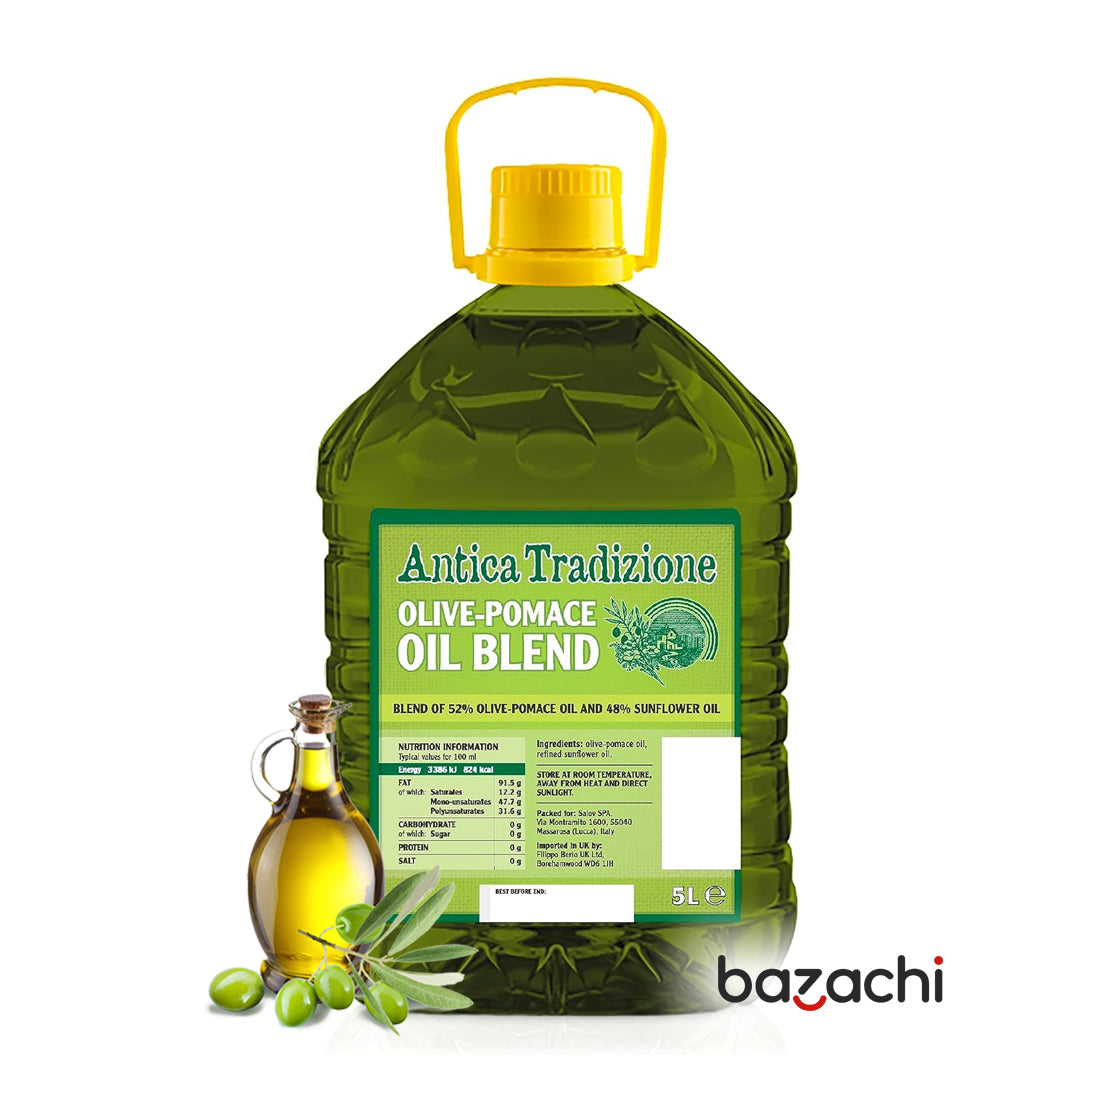 Antica Tradizione Olive Pomace Oil Blend 5L